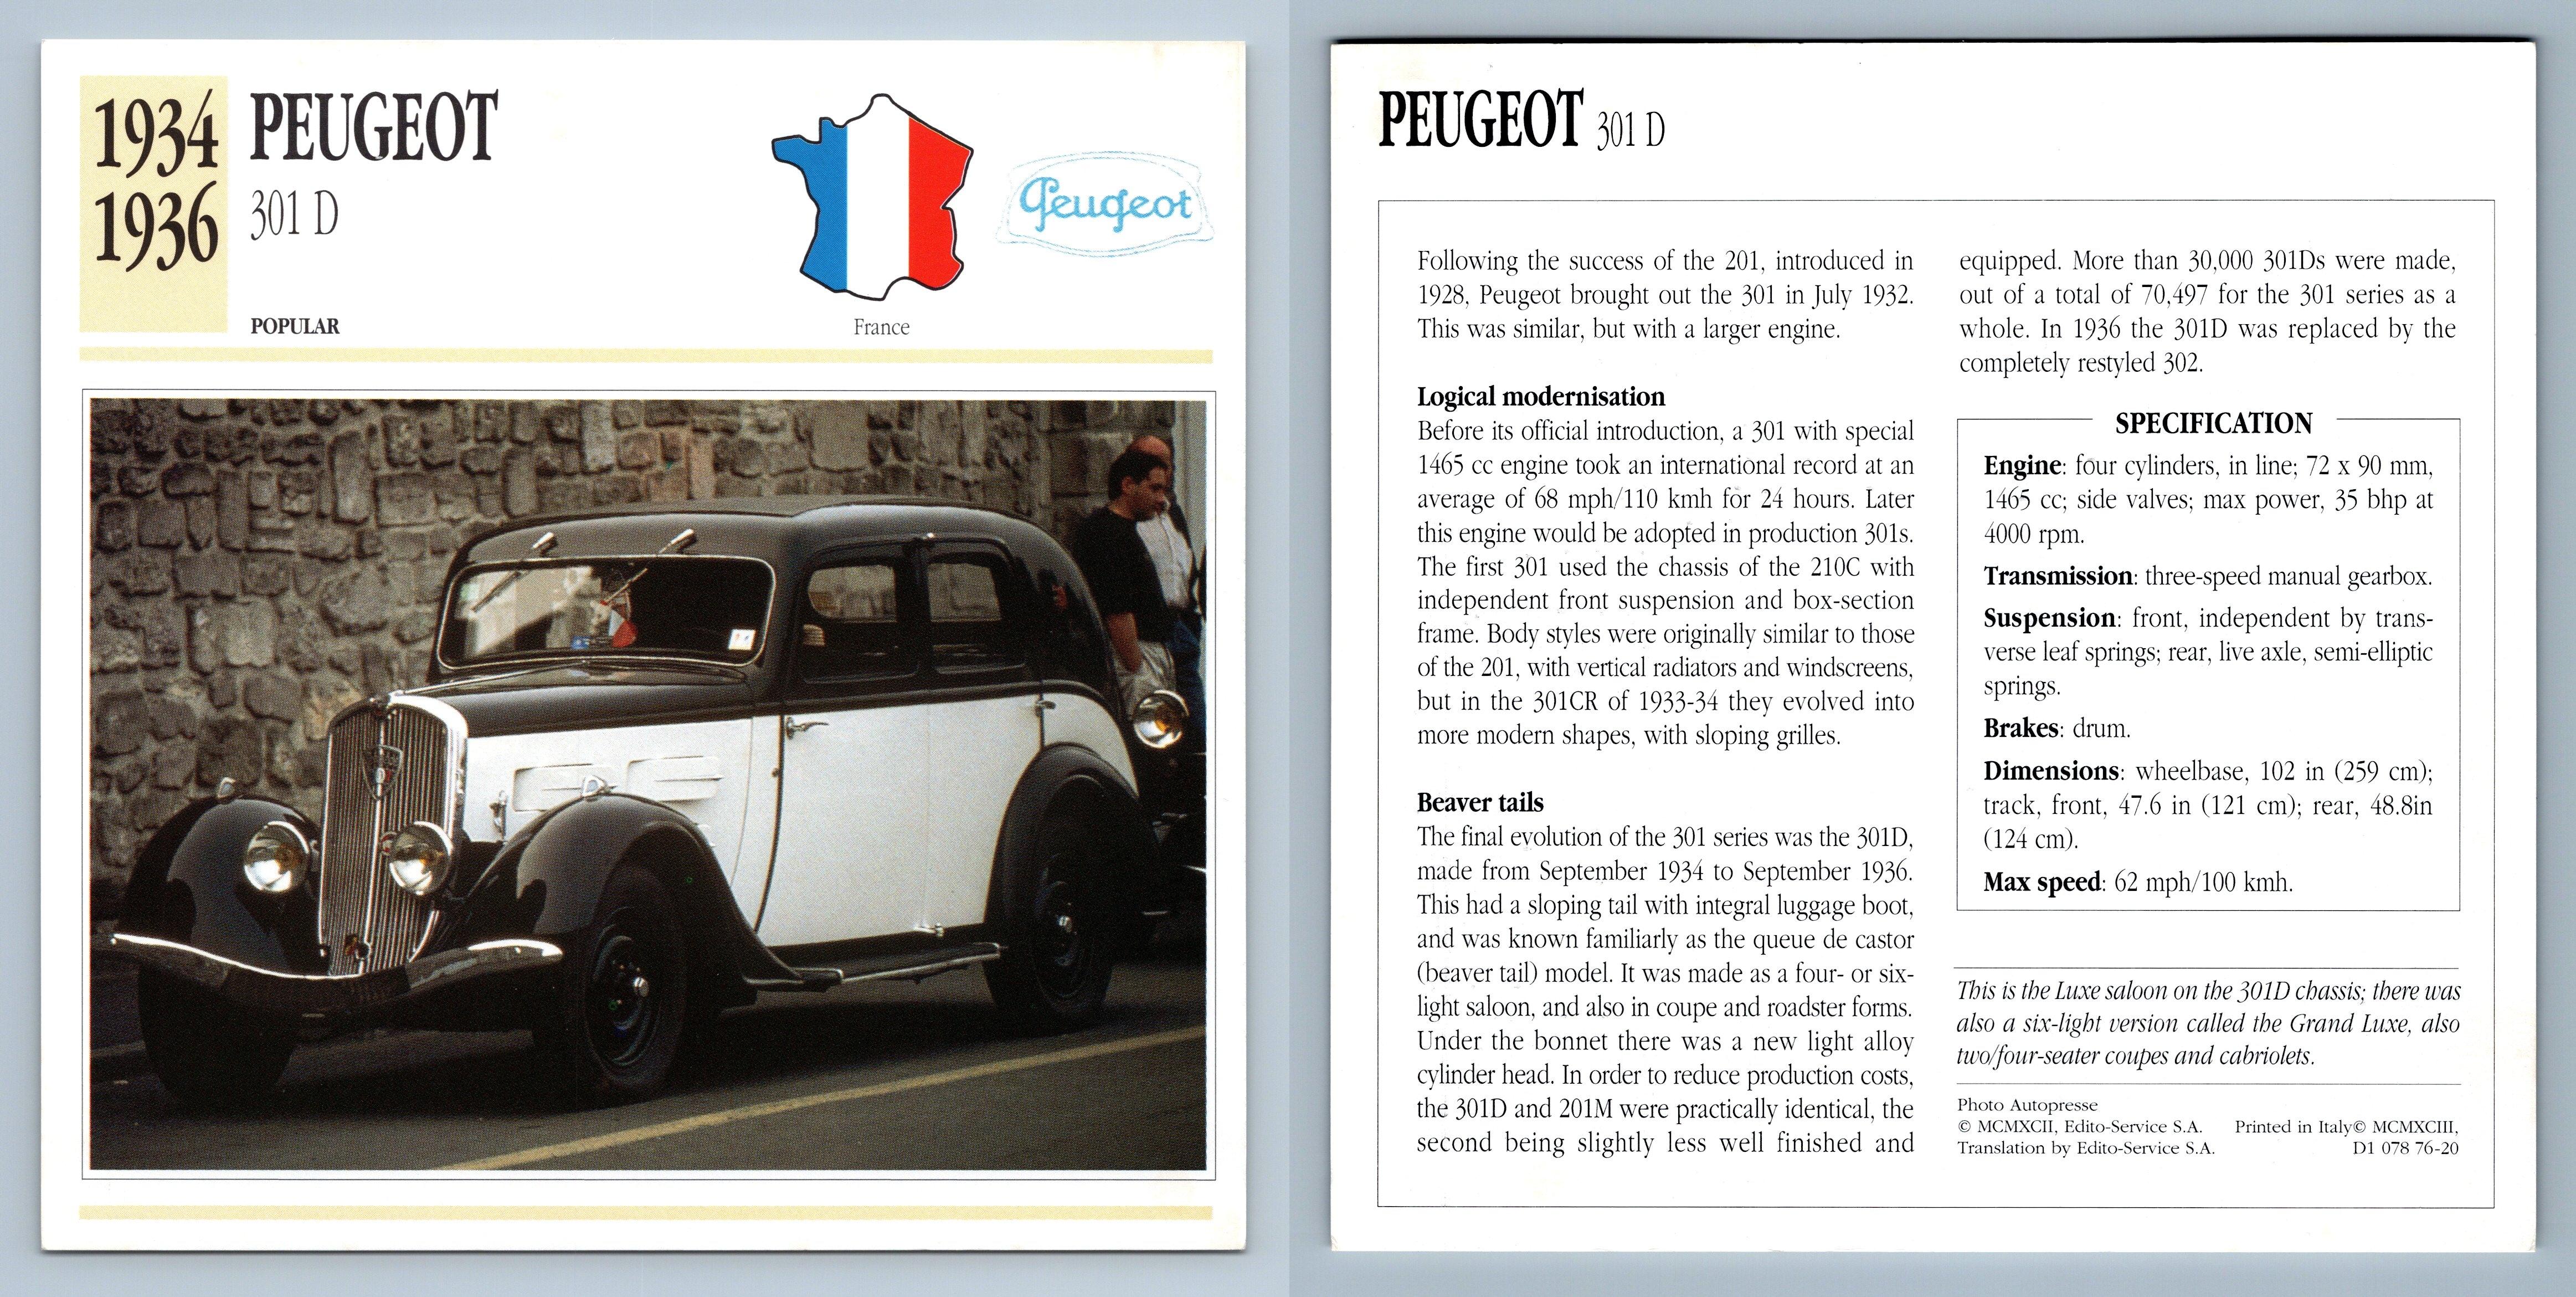 Peugeot - 301 D - 1934-36 Popular Collectors Club Card